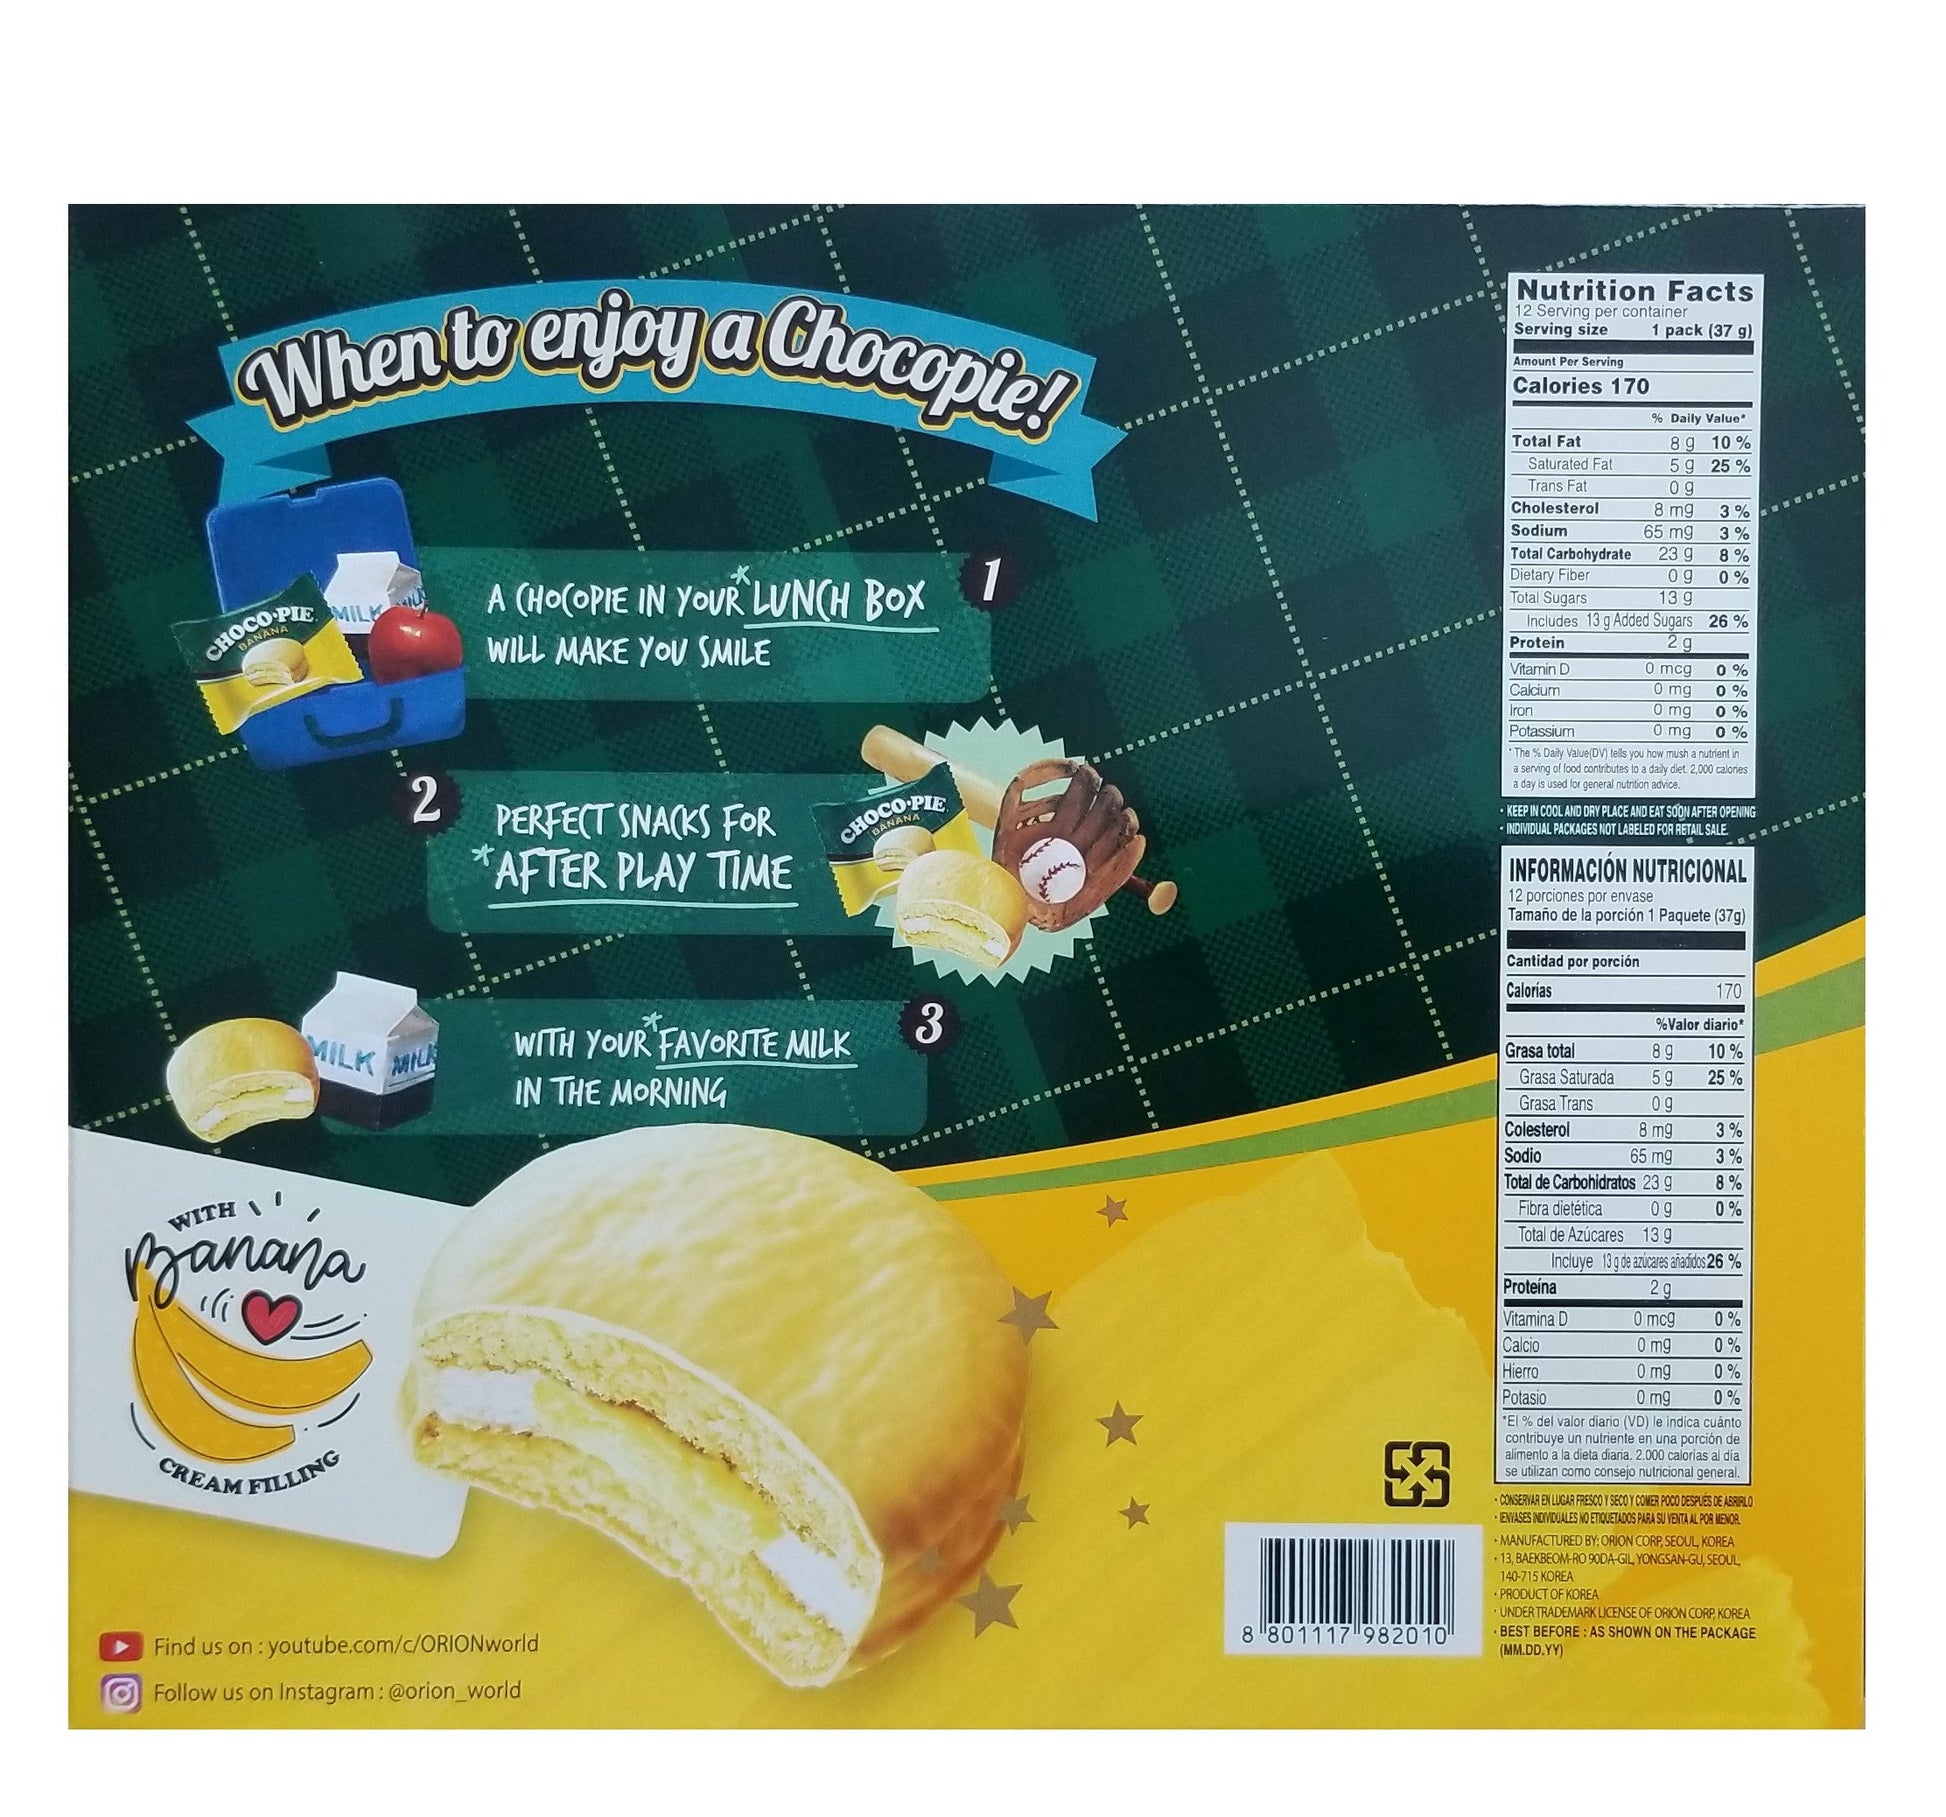 ORION Banana Choco Pie (444g) - COKOYAM